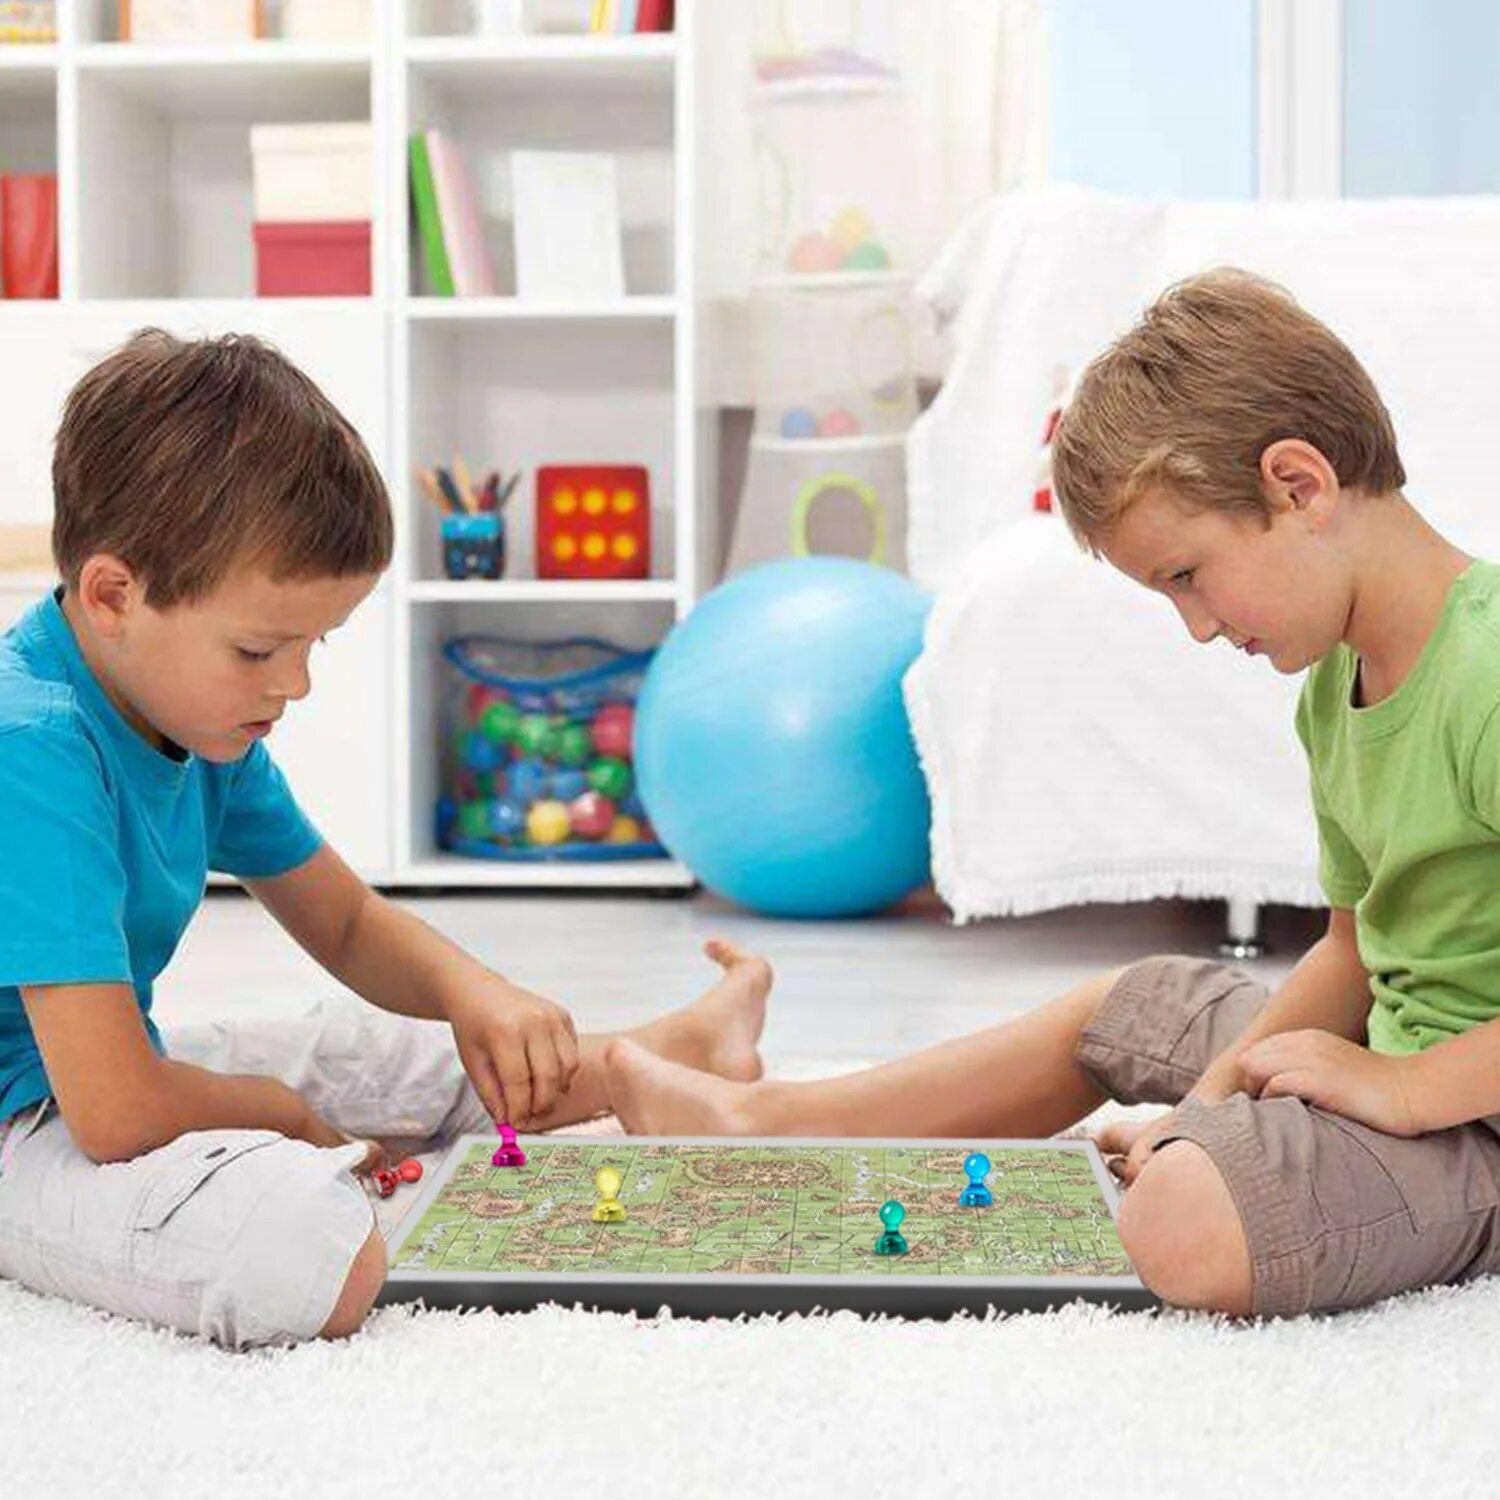 Мальчик играет на полу. Два мальчика играют. Дети играют в шахматы. Шахматы для детей. Дети играют на полу.